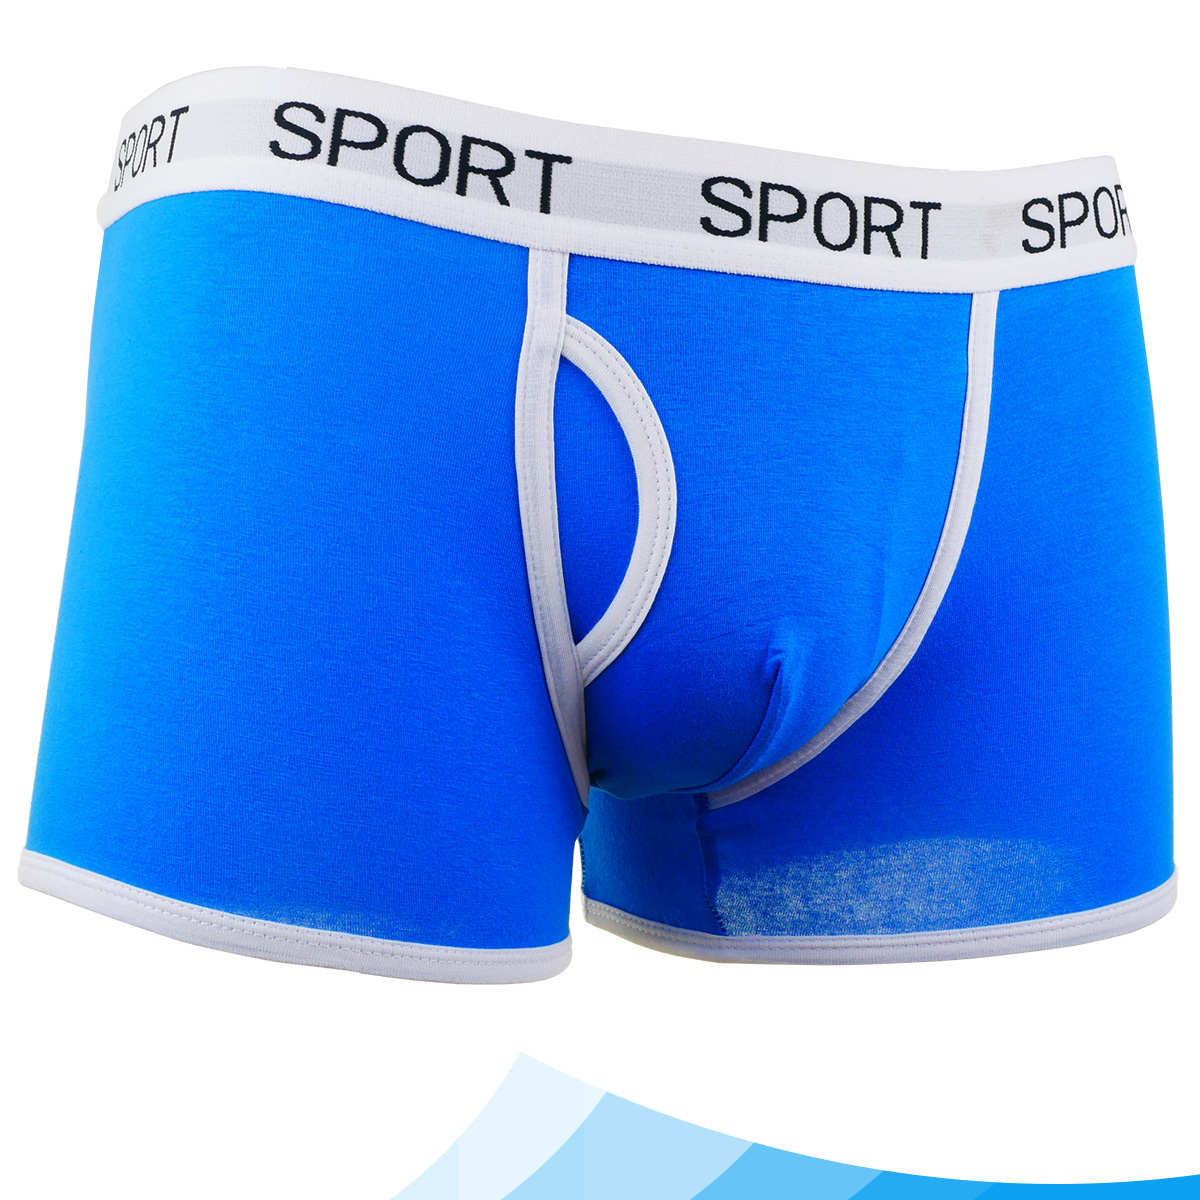 Quần lót nam boxer đùi cotton cao cấp đẹp gợi cảm Fossati Sport co dãn 4 chiều màu xanh trẻ trung, vải 75% cotton 25% Spandex mềm mịn may thể thao tôn dáng